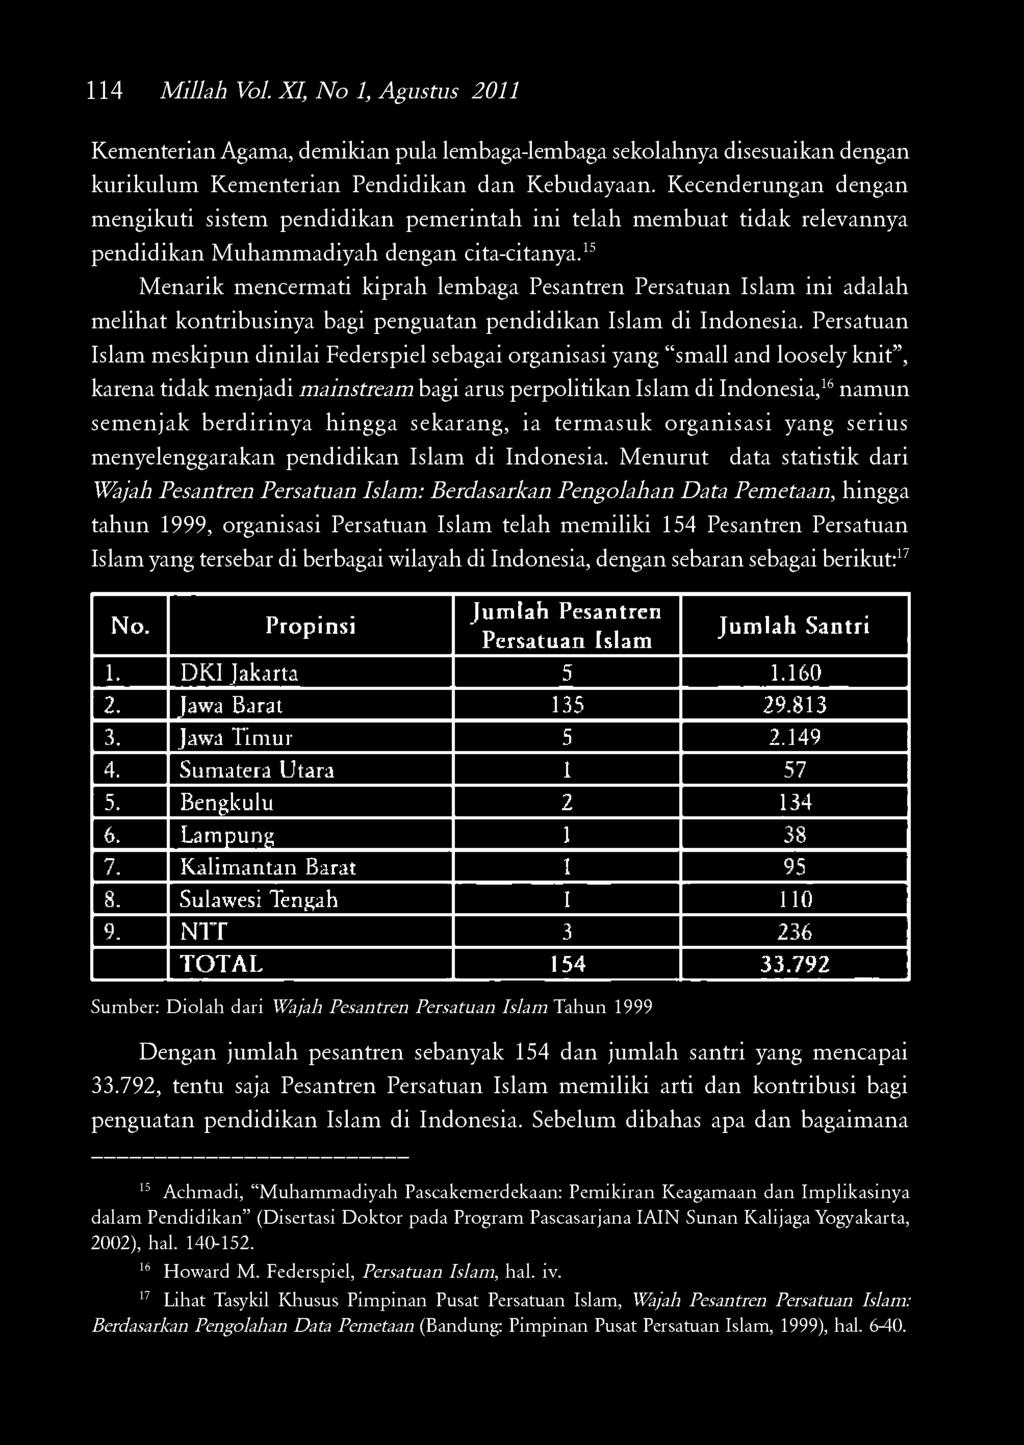 15 Menarik mencermati kiprah lembaga Pesantren Persatuan Islam ini adalah melihat kontribusinya bagi penguatan pendidikan Islam di Indonesia.